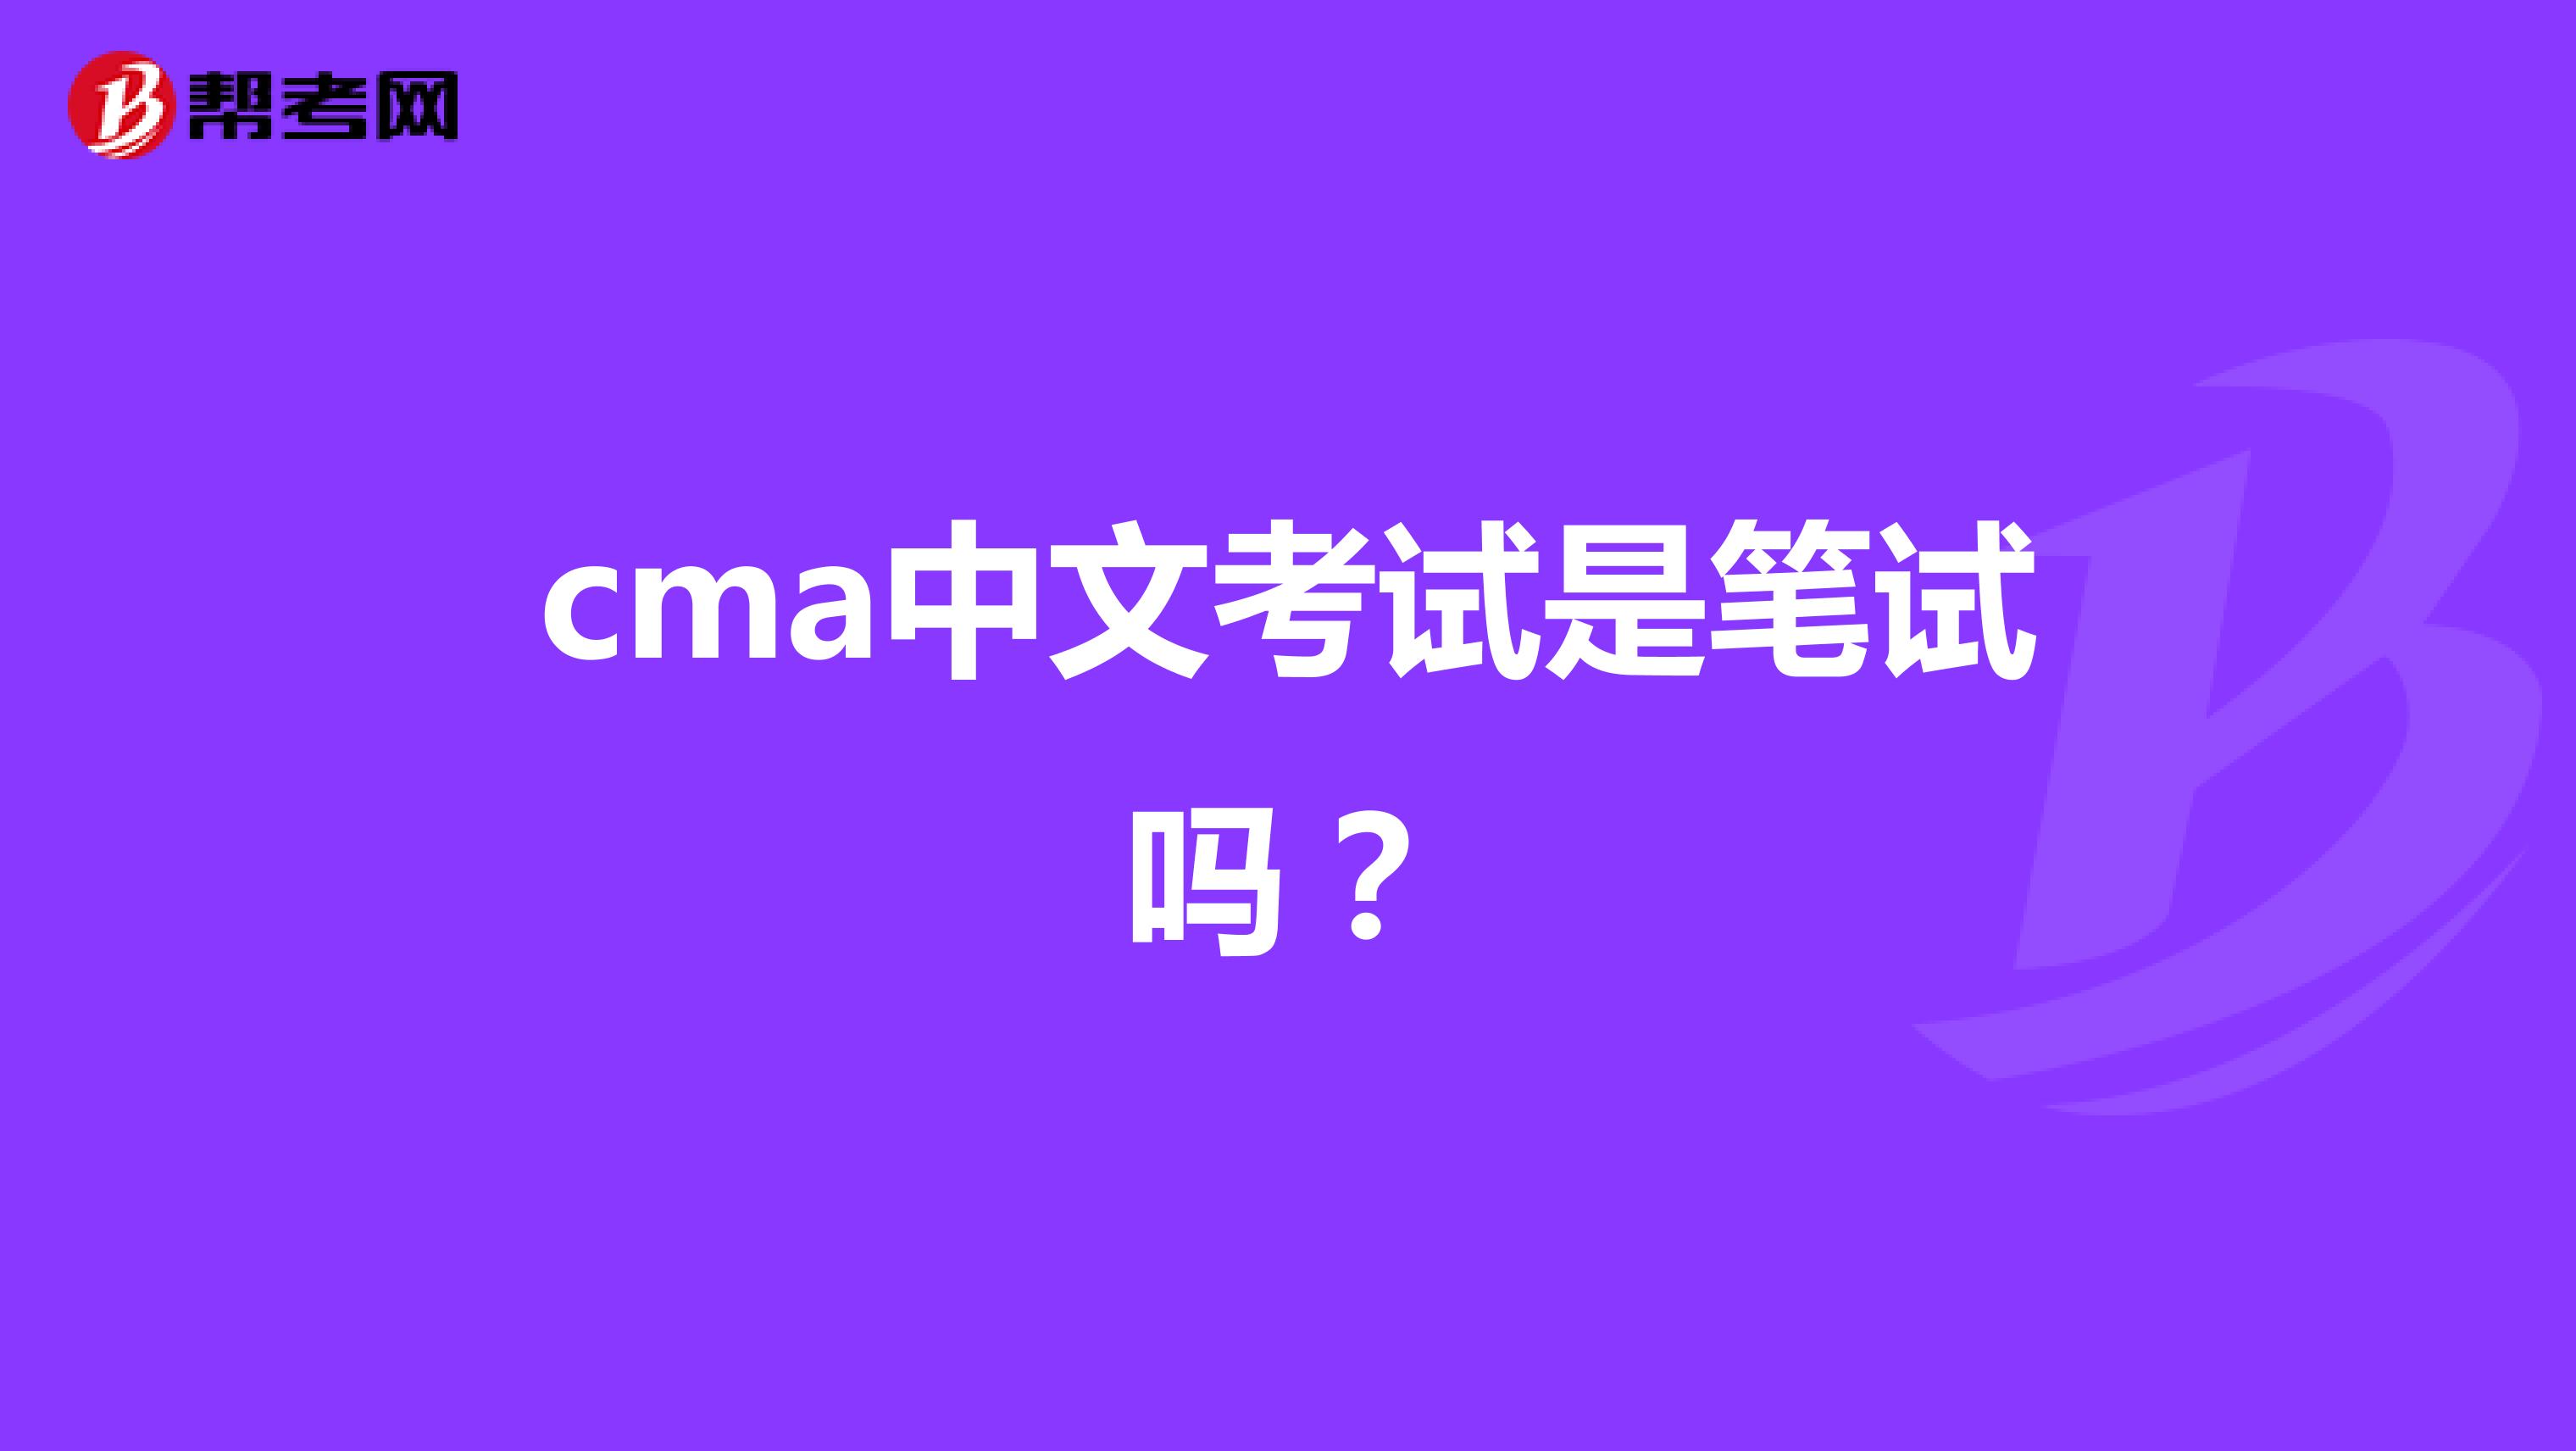 cma中文考试是笔试吗？